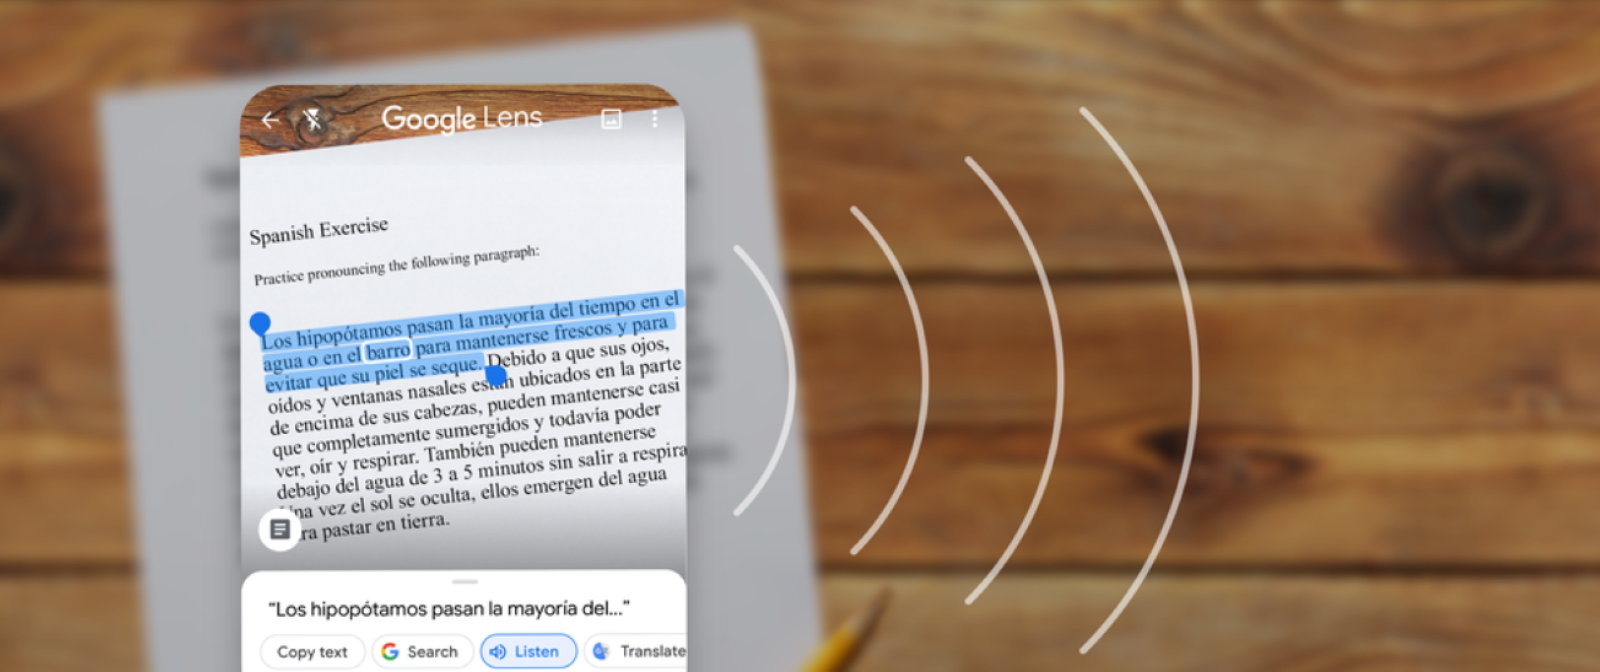 L’application Google Lens sait reconnaitre et extraire du texte d’une image et permet de le transmettre vers un ordinateur. © Google